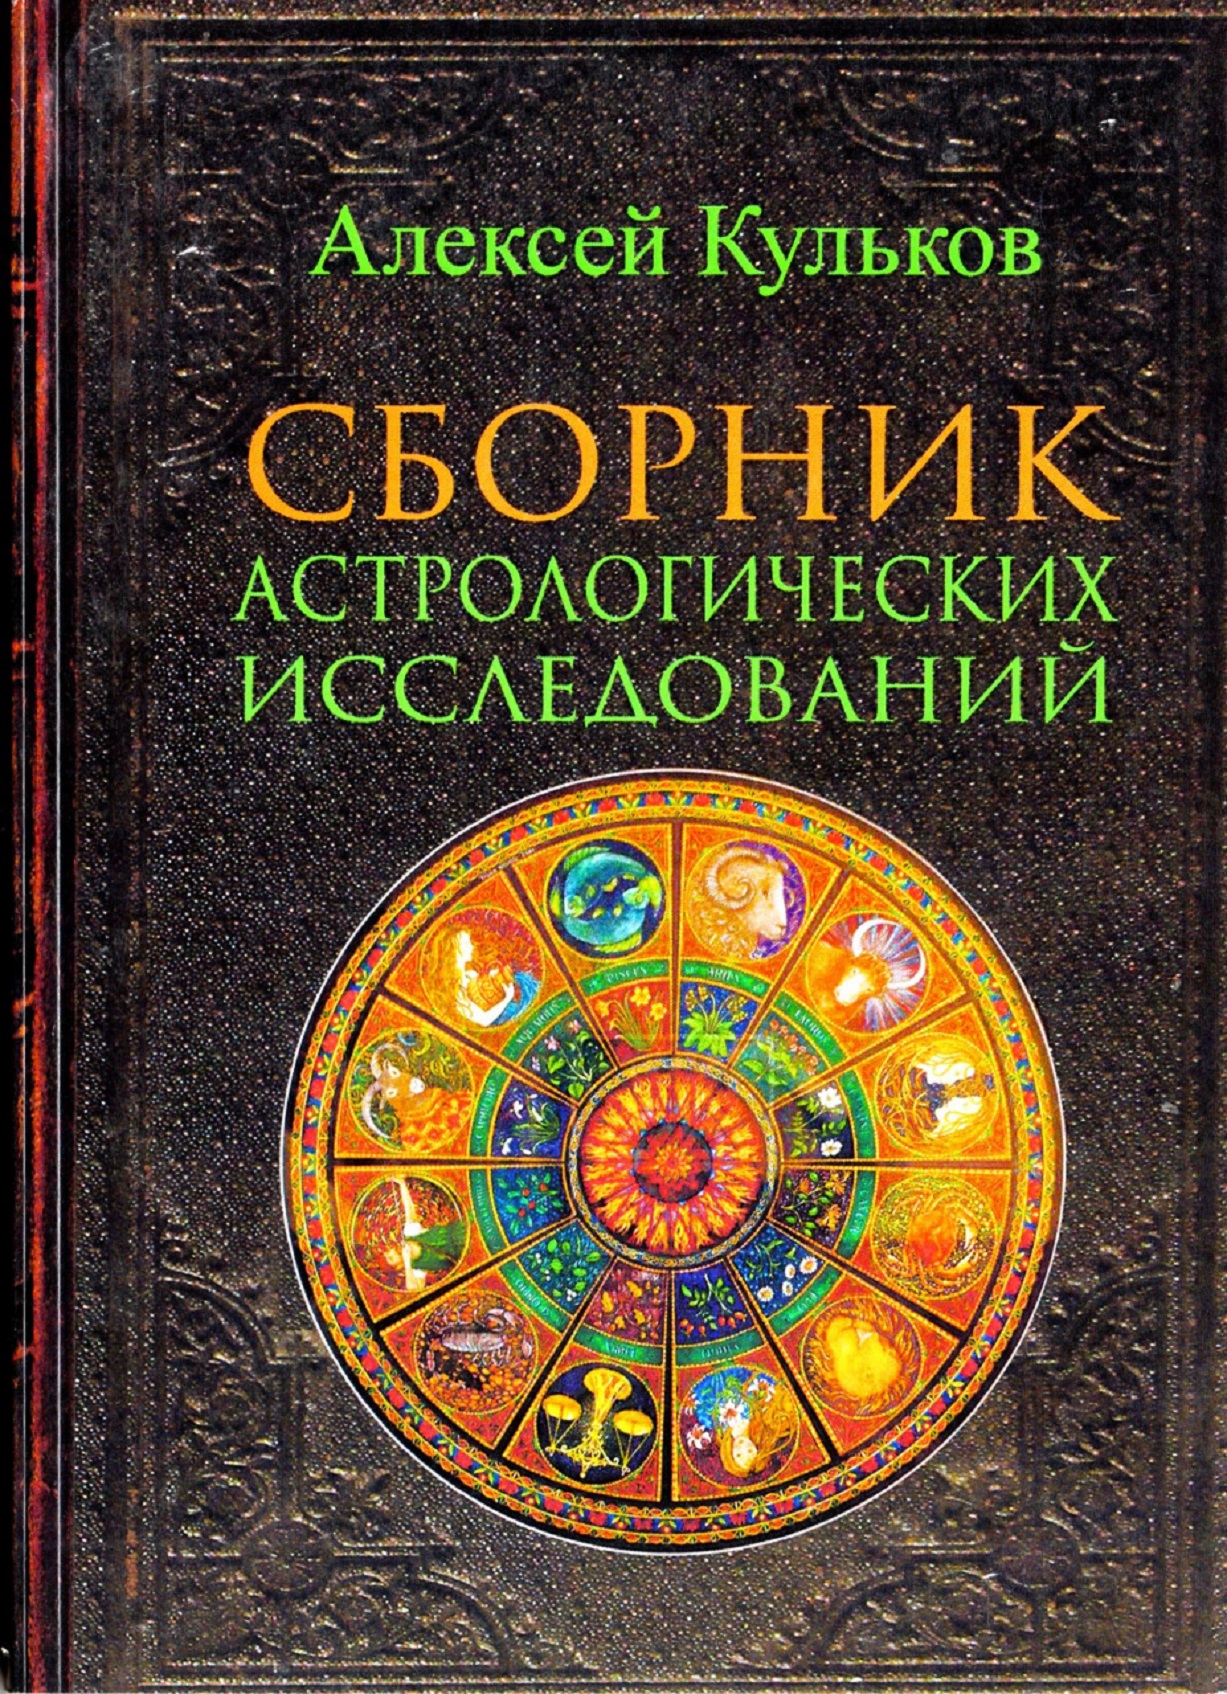 Сборник астрологических исследований